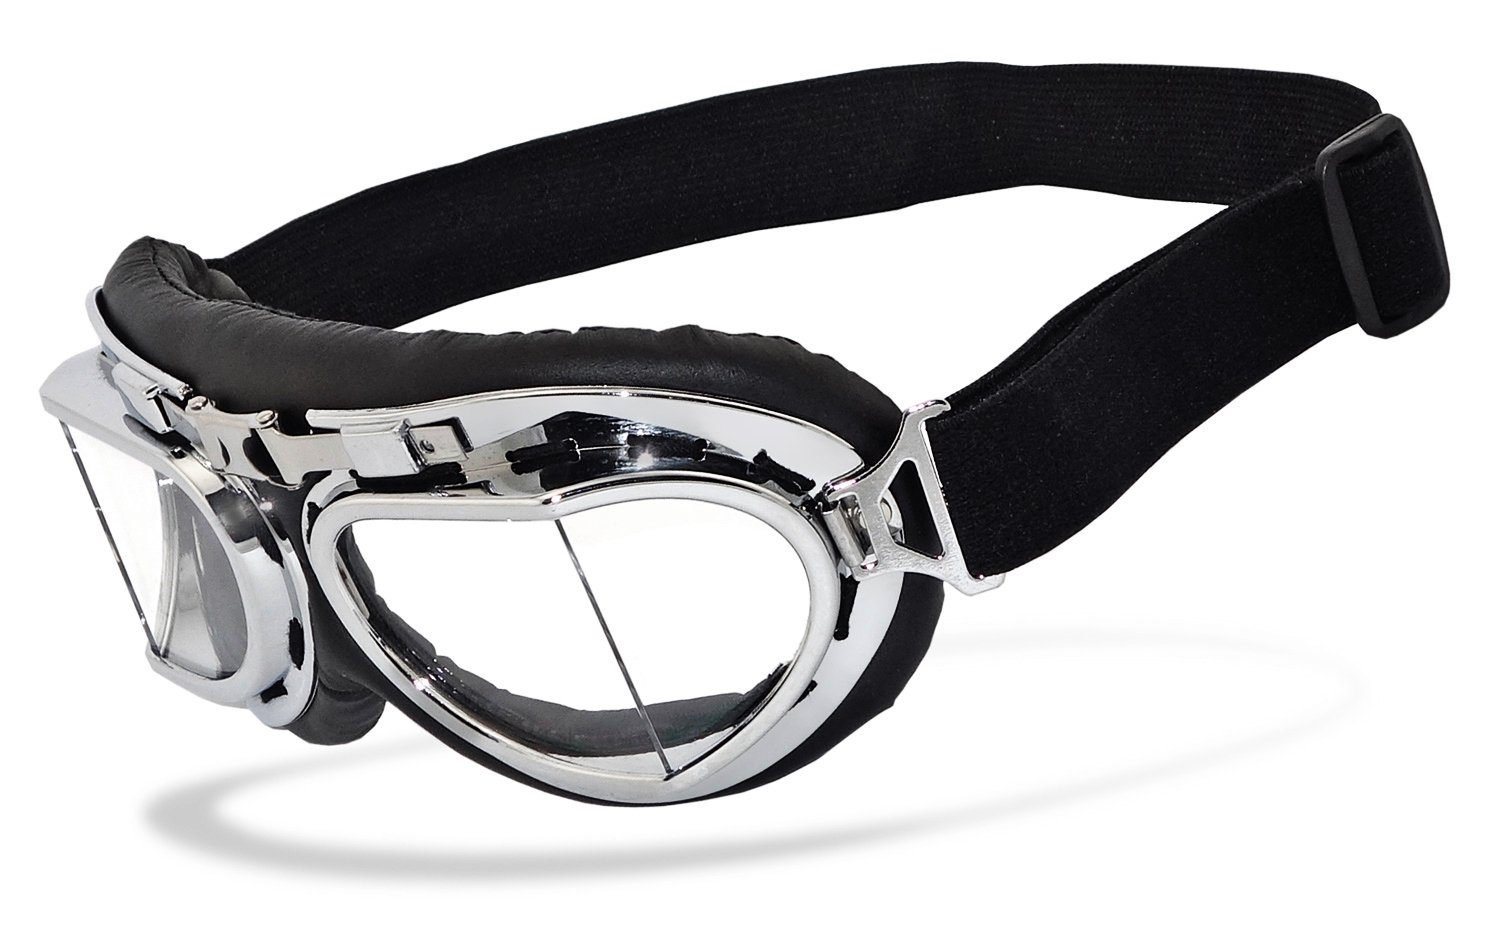 Chillout Rider Motorradbrille rb-2, Motorradbrille mit Sicherheitsglas